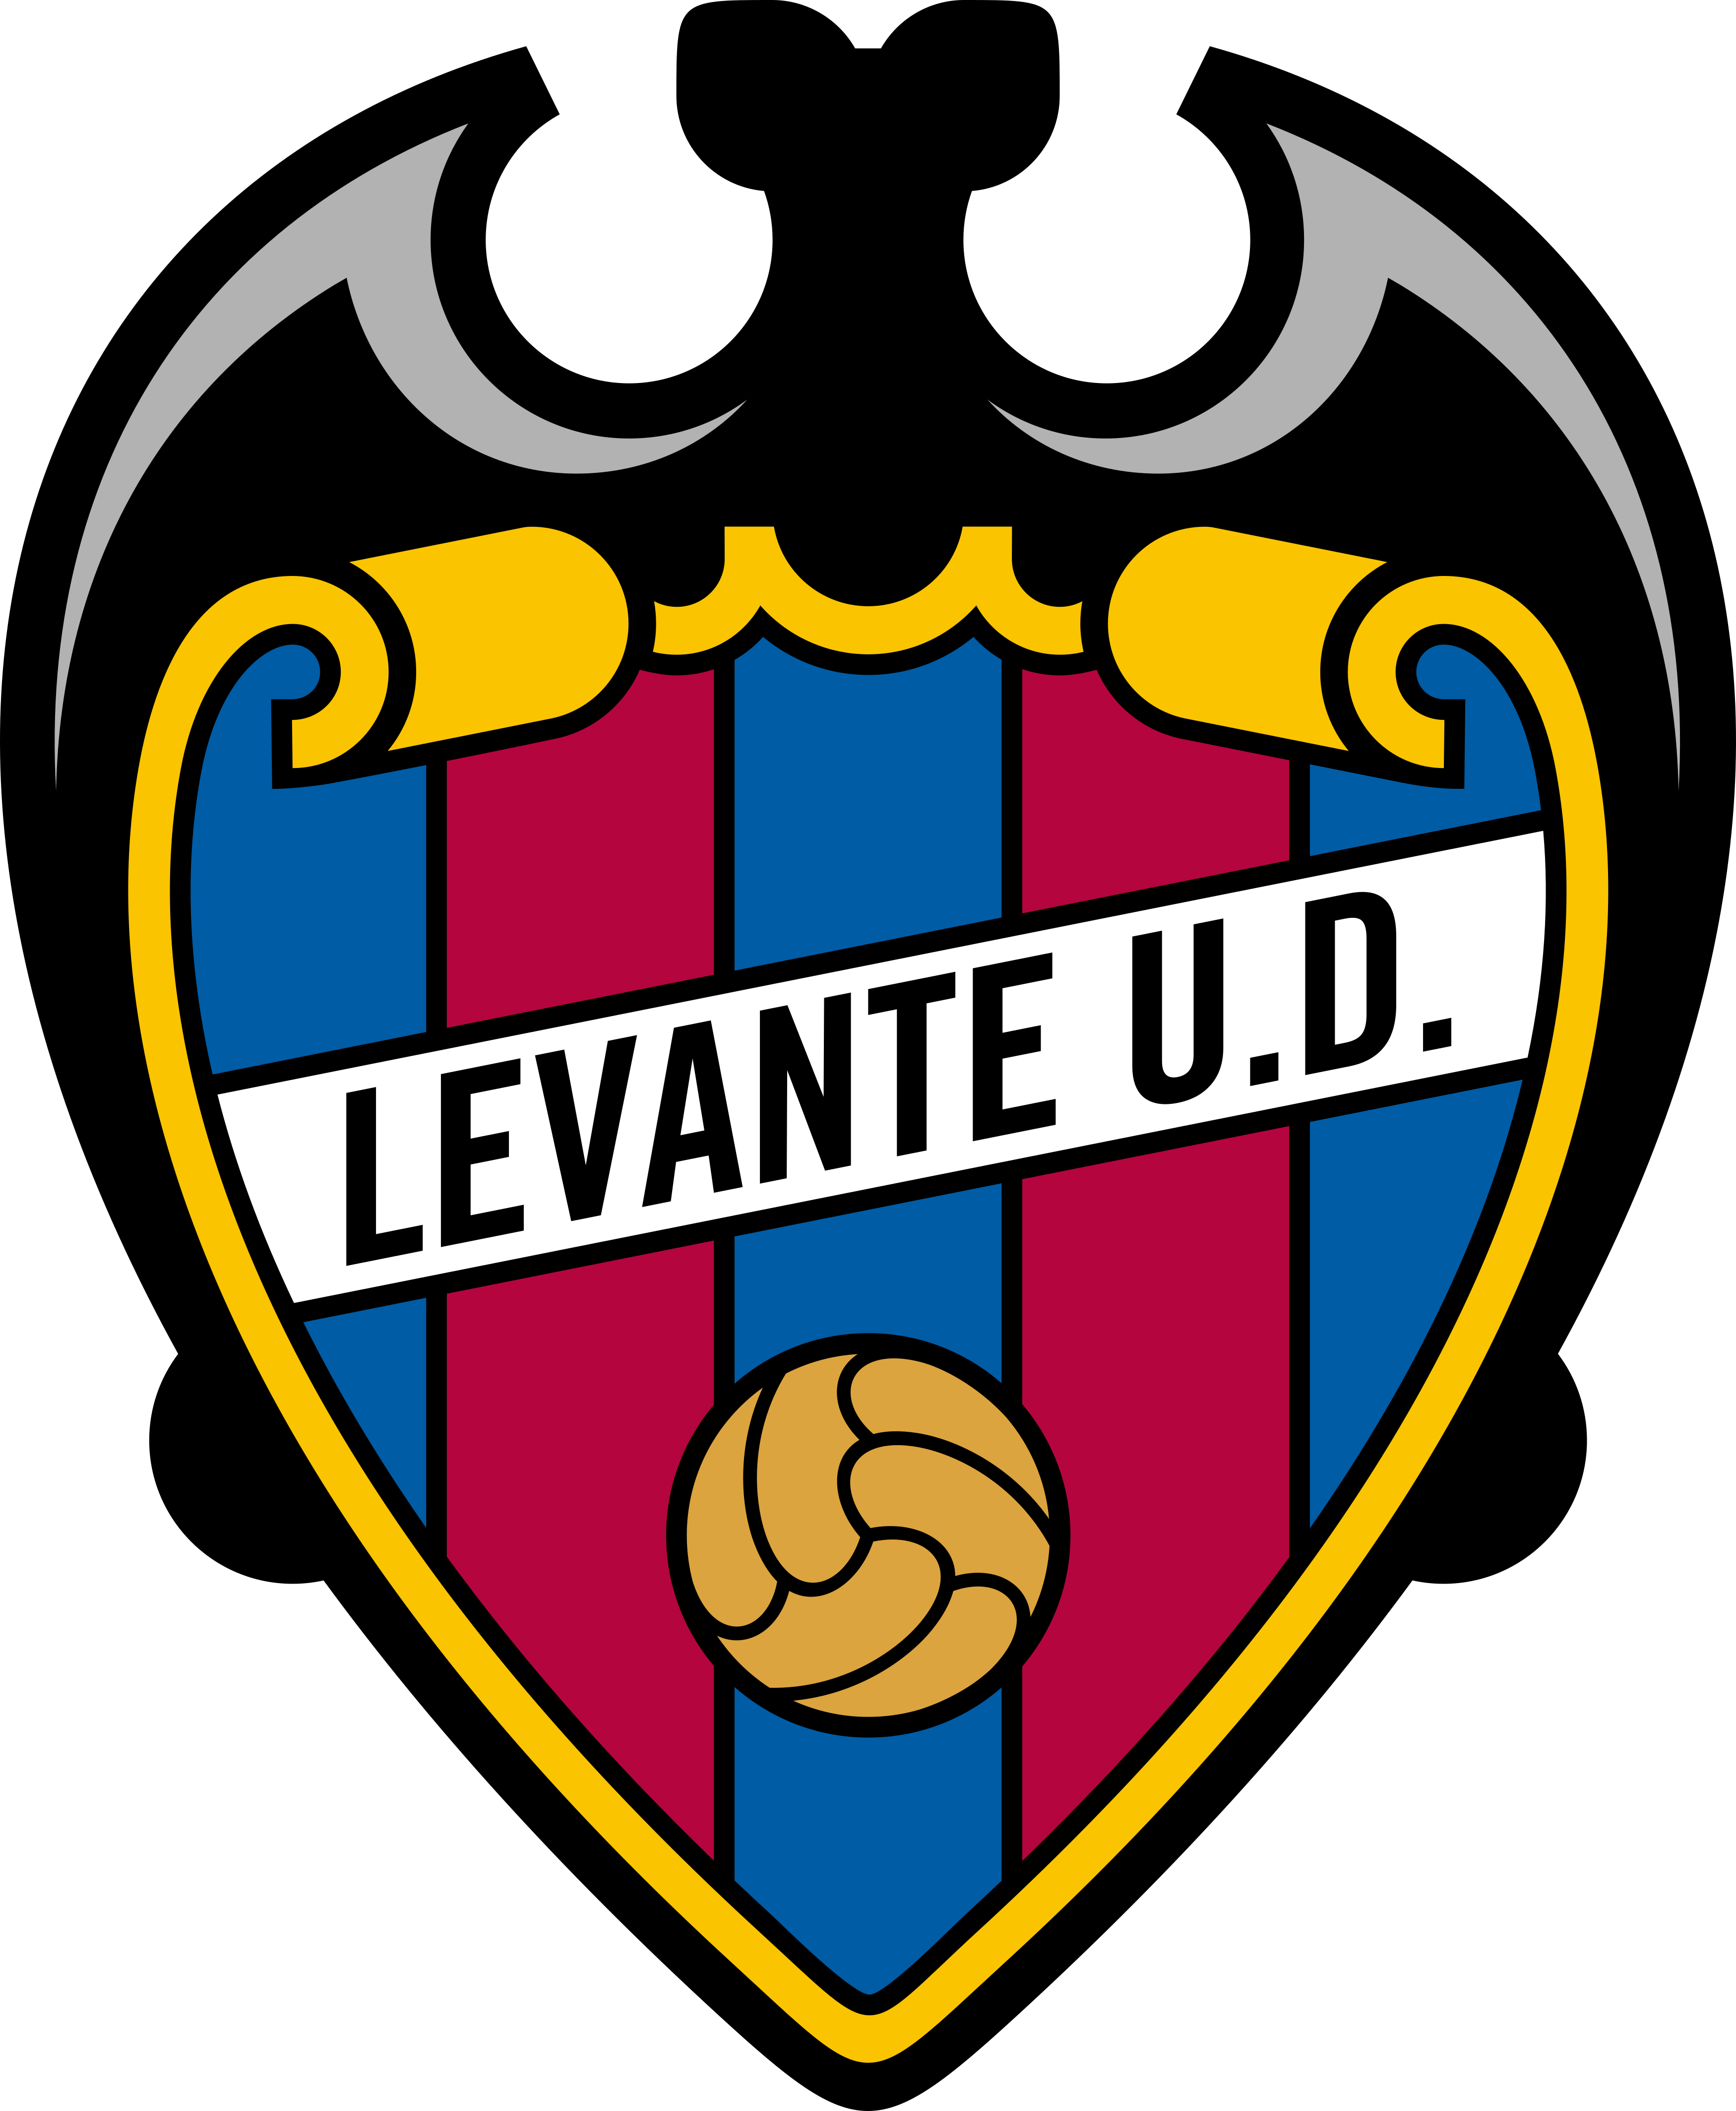 Equipo validado para la Temporada 21/22 y que por ello ha sido premiado con 2 entradas para asistir en directo al partido de Fútbol de la Liga Santander, entre el Deportivo Alavés y Levante.